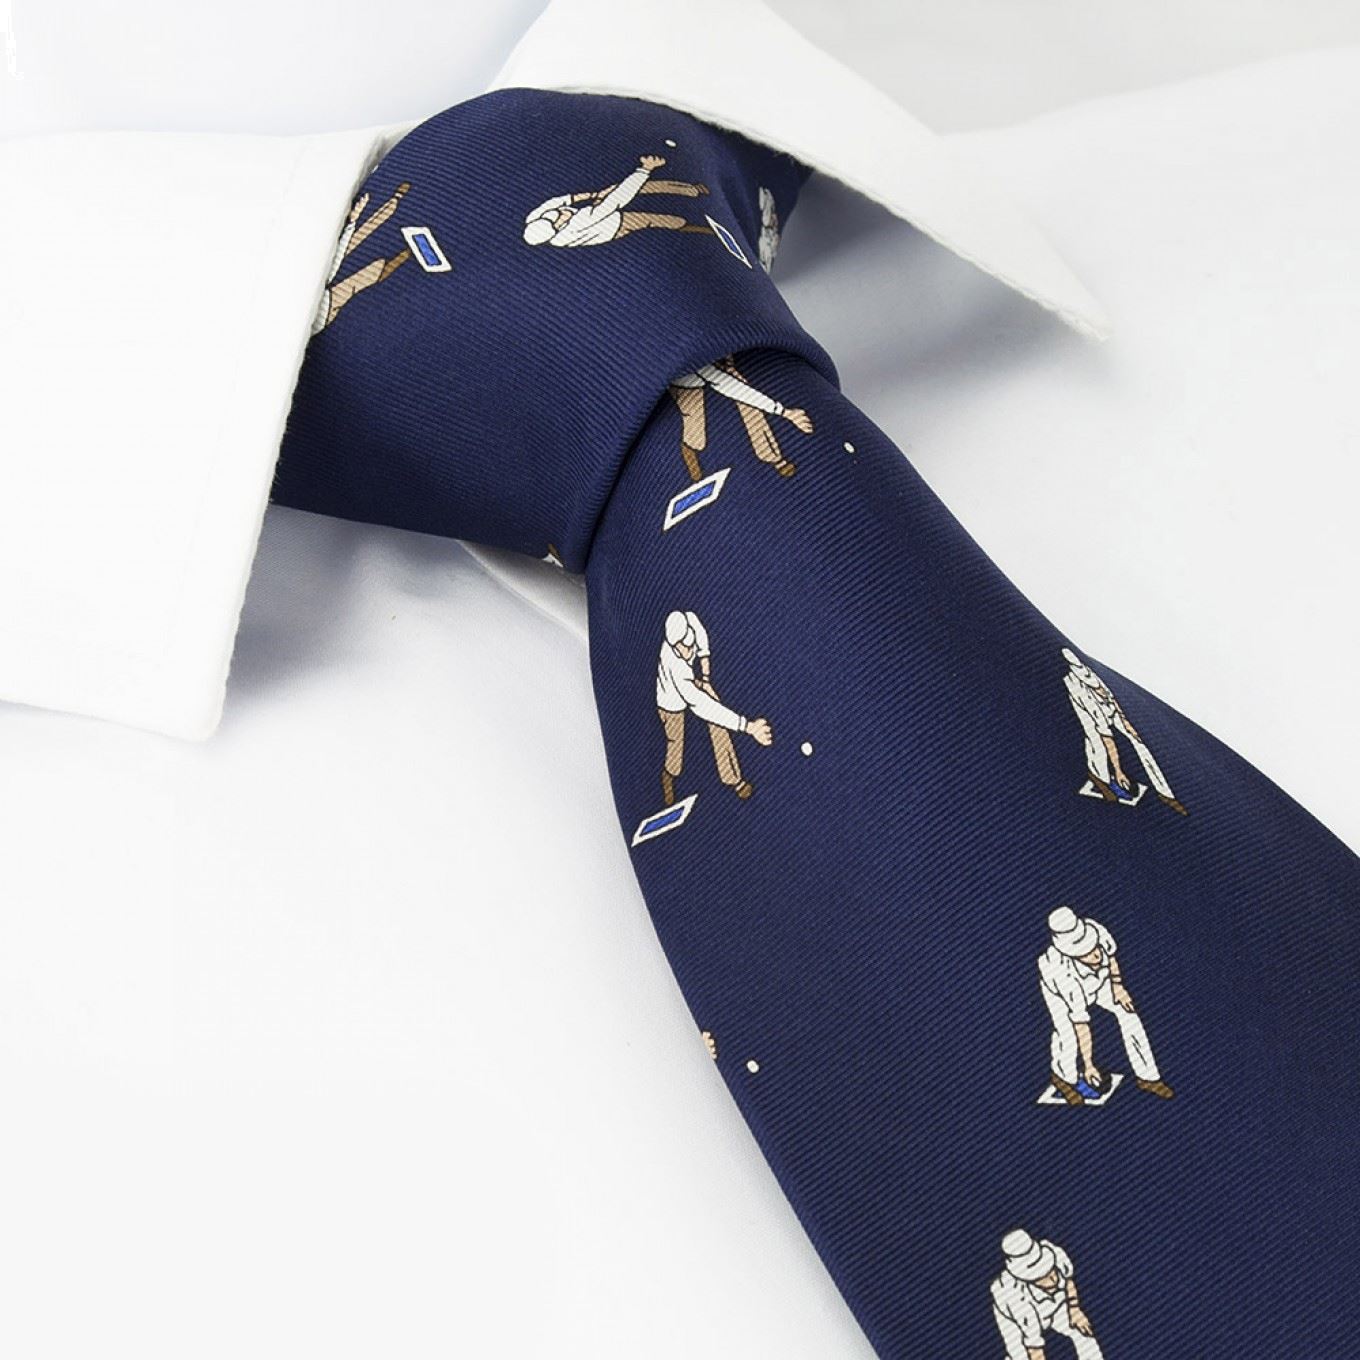 Navy Silk Tie with Bowls Design – The Cufflink Store